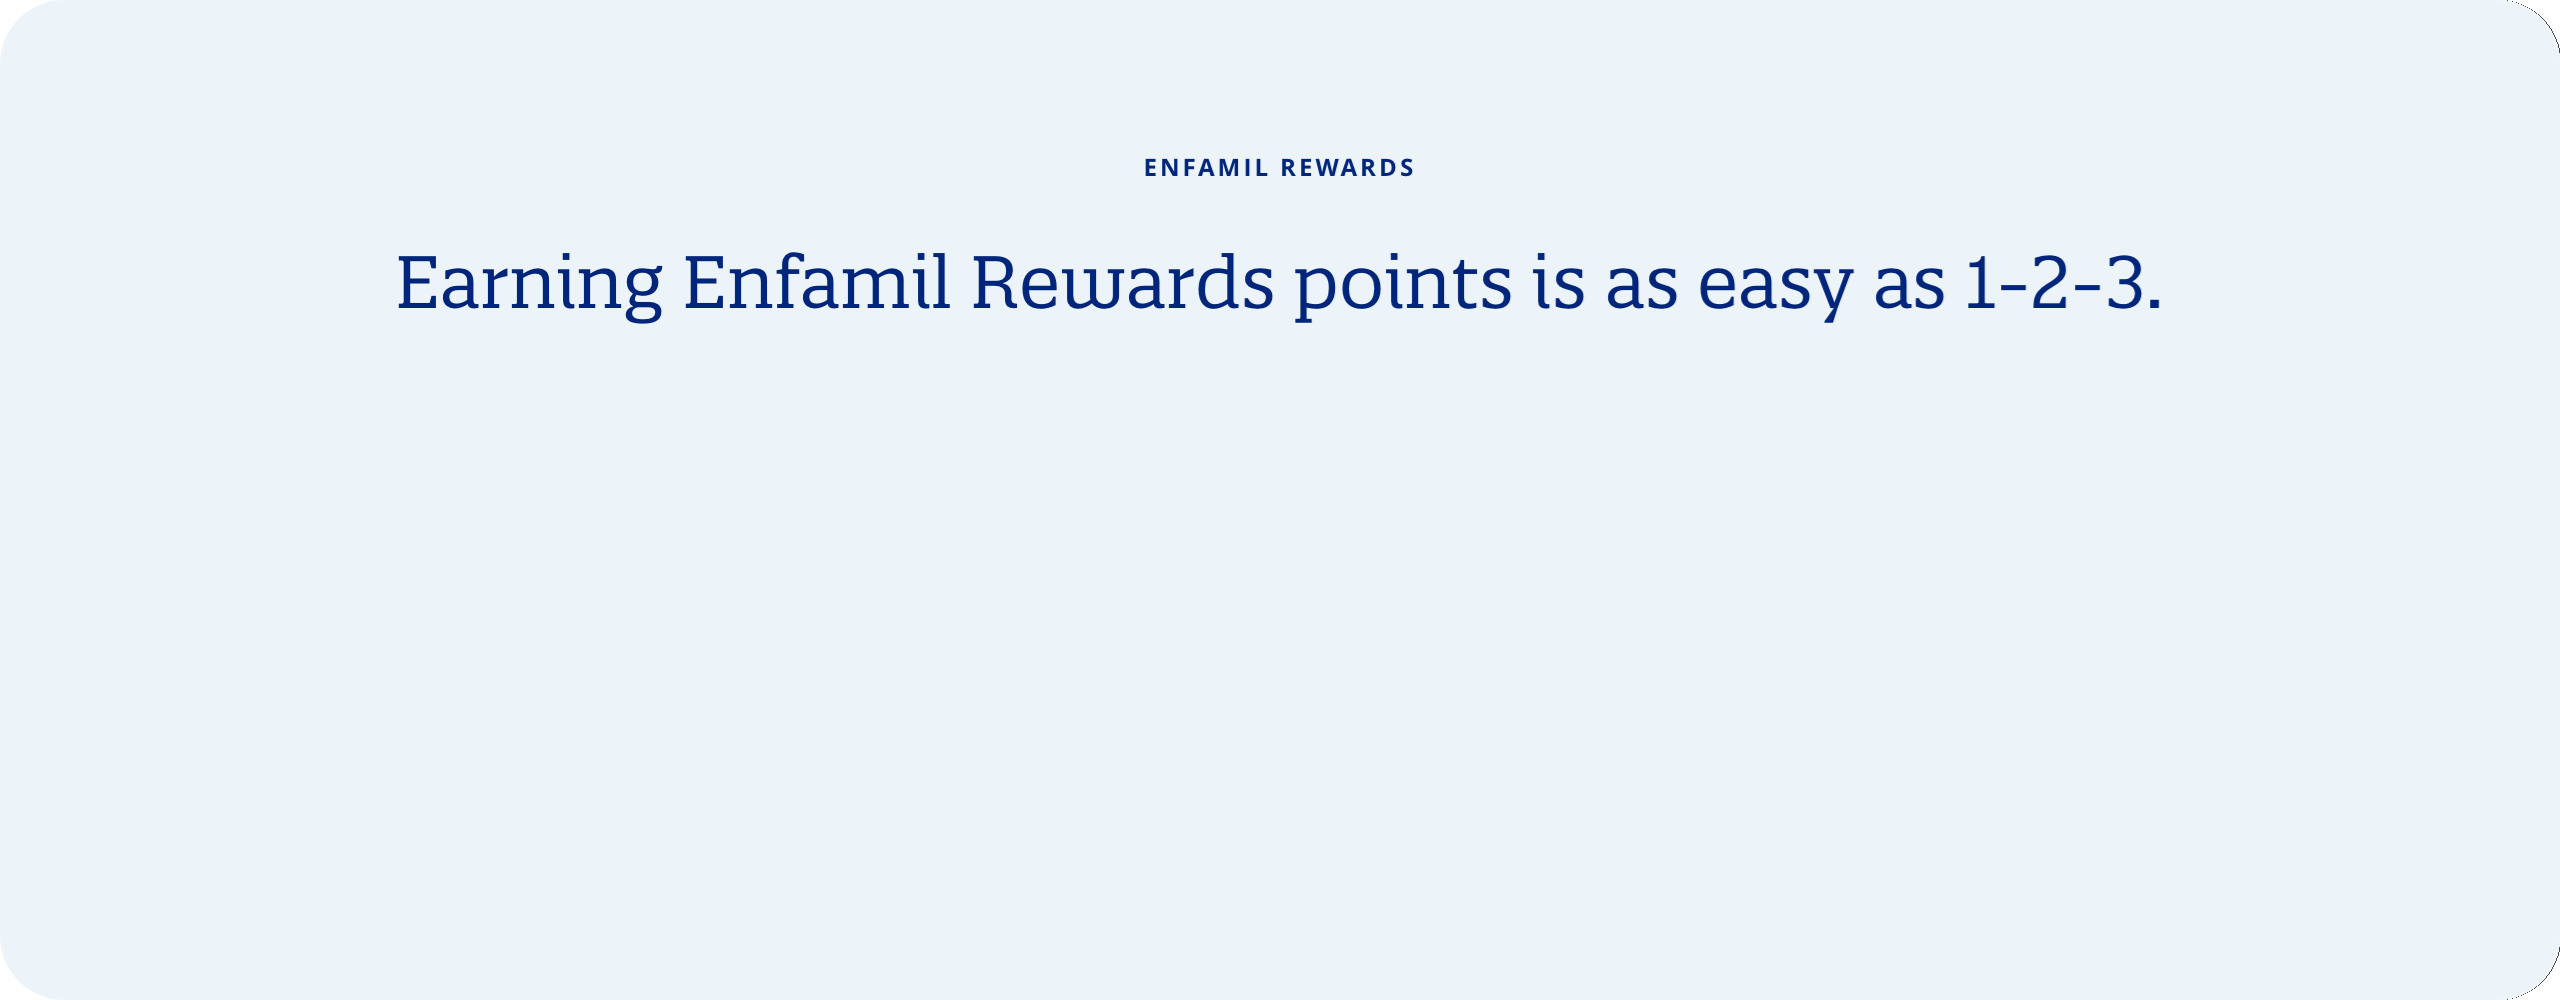 Enfamil Rewards: Earning Enfamil Rewards points is as easy as 1-2-3. Buy, Engage, Refer 